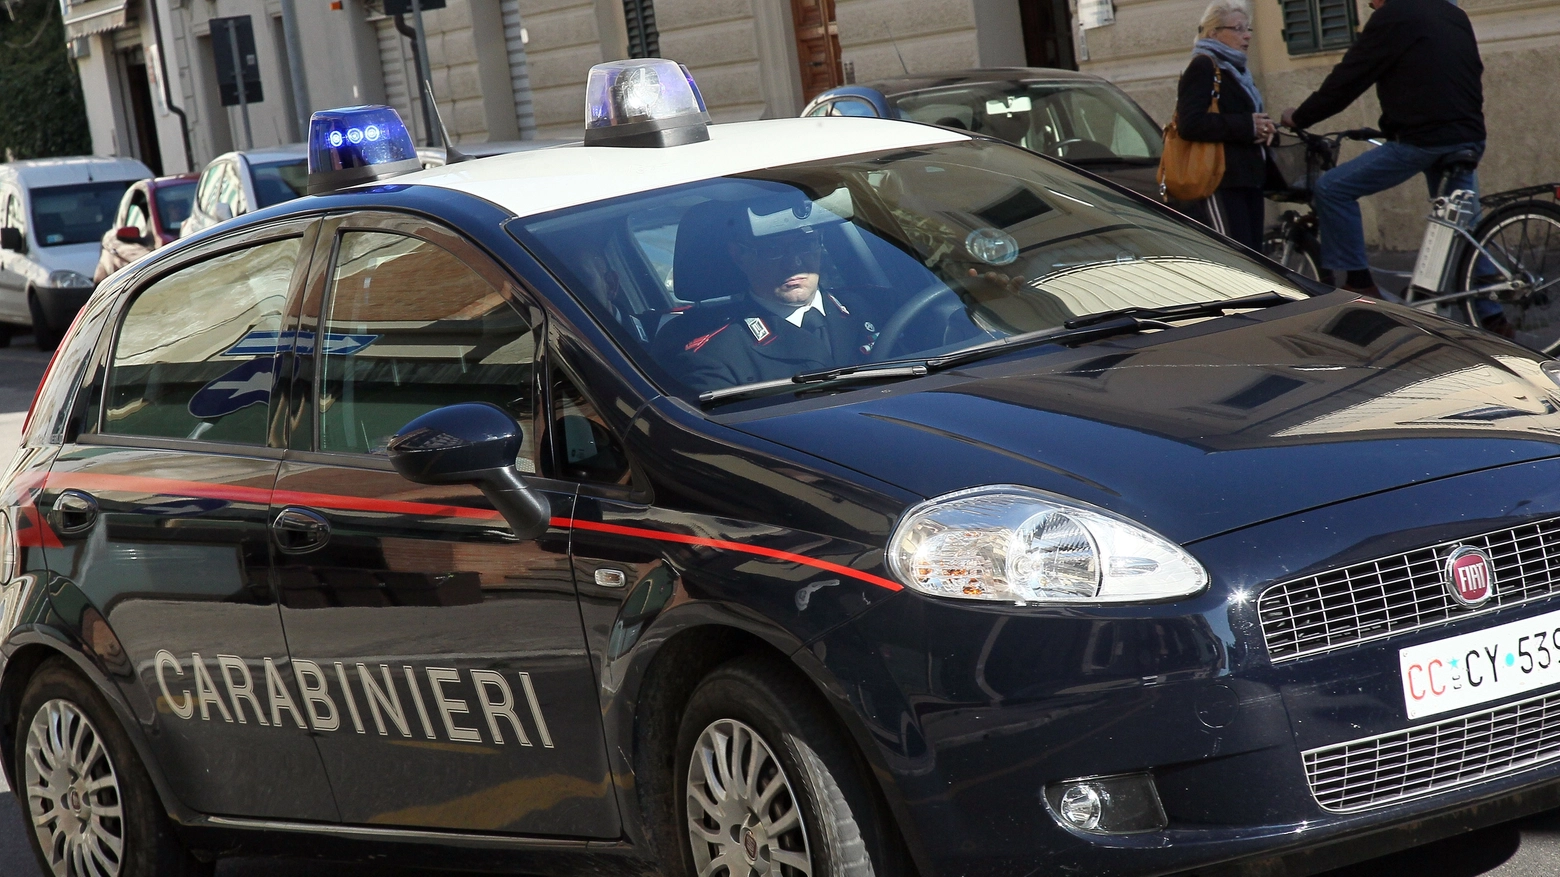 Le indagini sono state condotte dai carabinieri di Luino